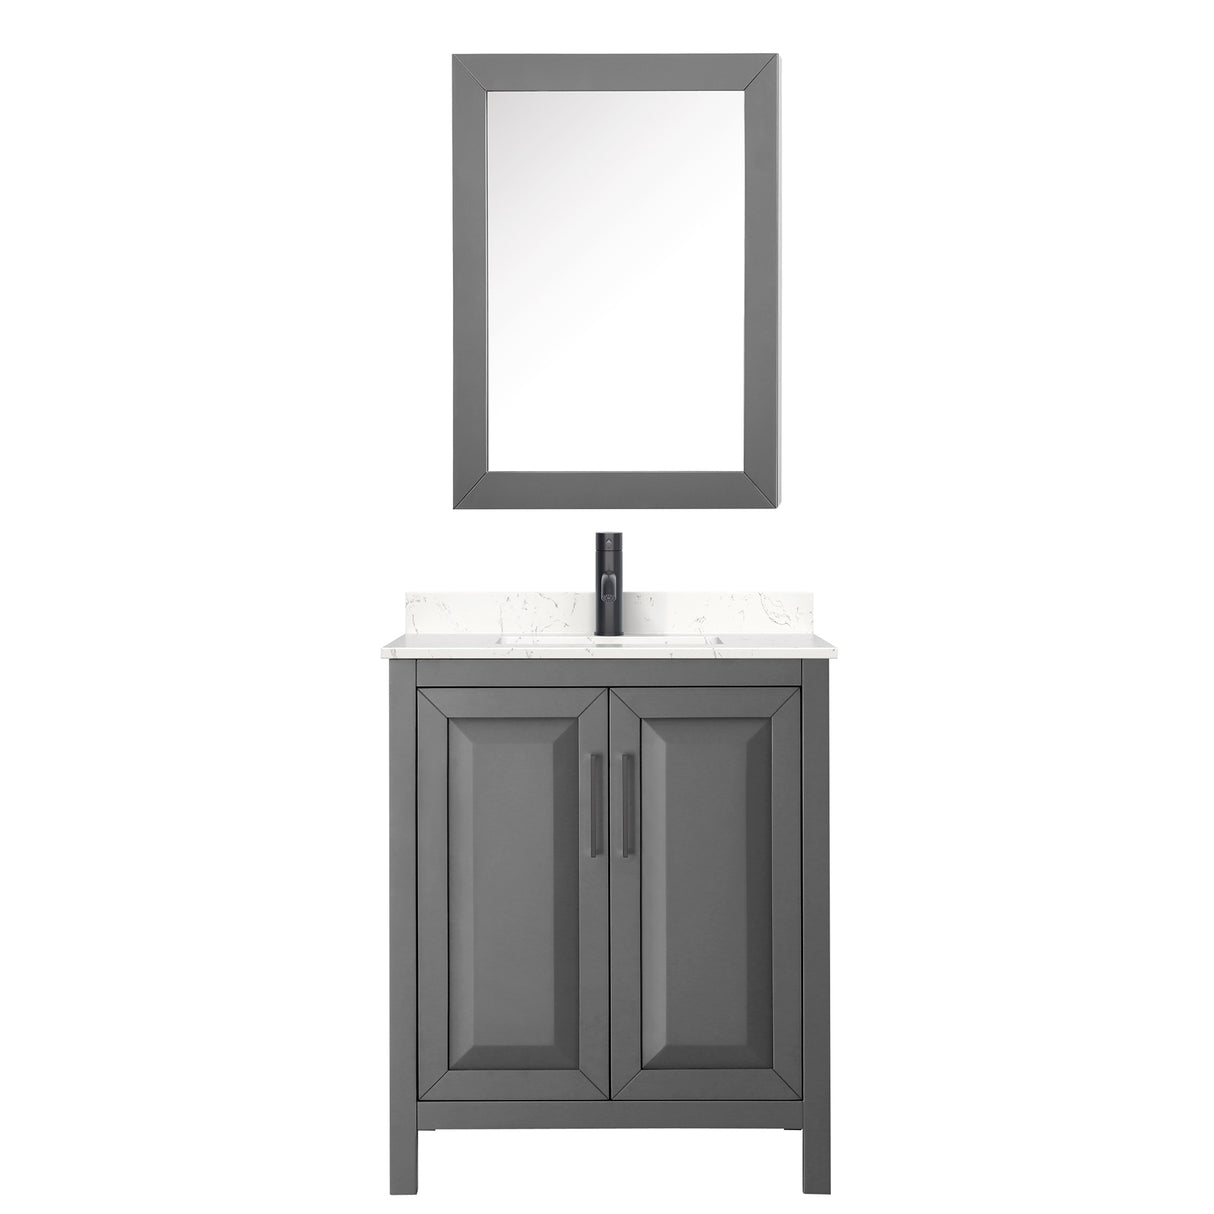 Daria 30 Inch Single Bathroom Vanity in Dark Gray Carrara Cultured Marble Countertop Undermount Square Sink Matte Black Trim Medicine Cabinet